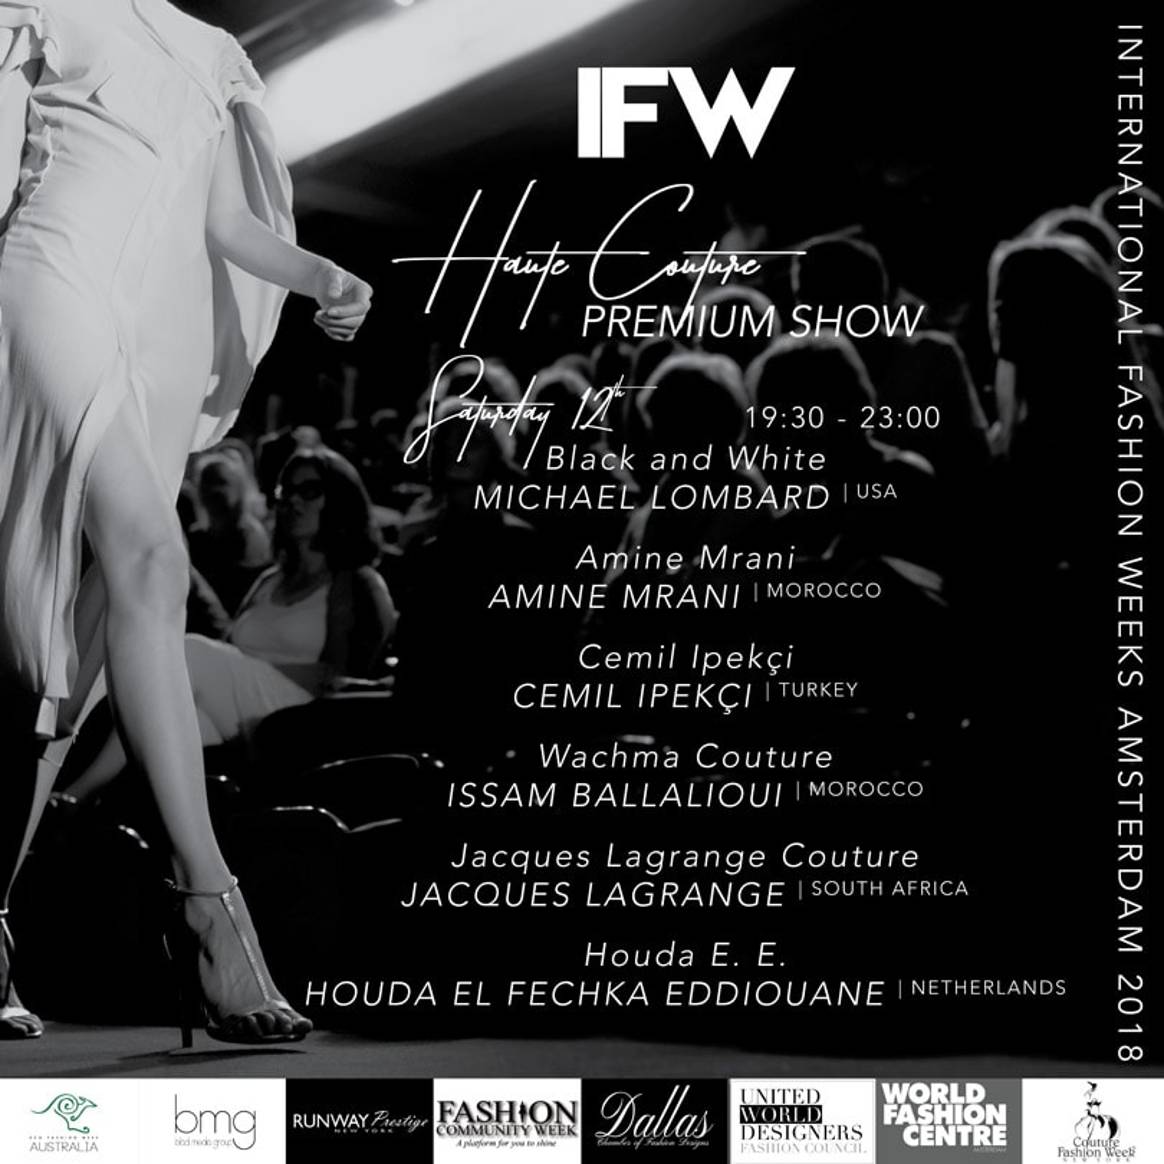 Amsterdam krijgt er met International Fashion Weeks een nieuw mode-evenement bij